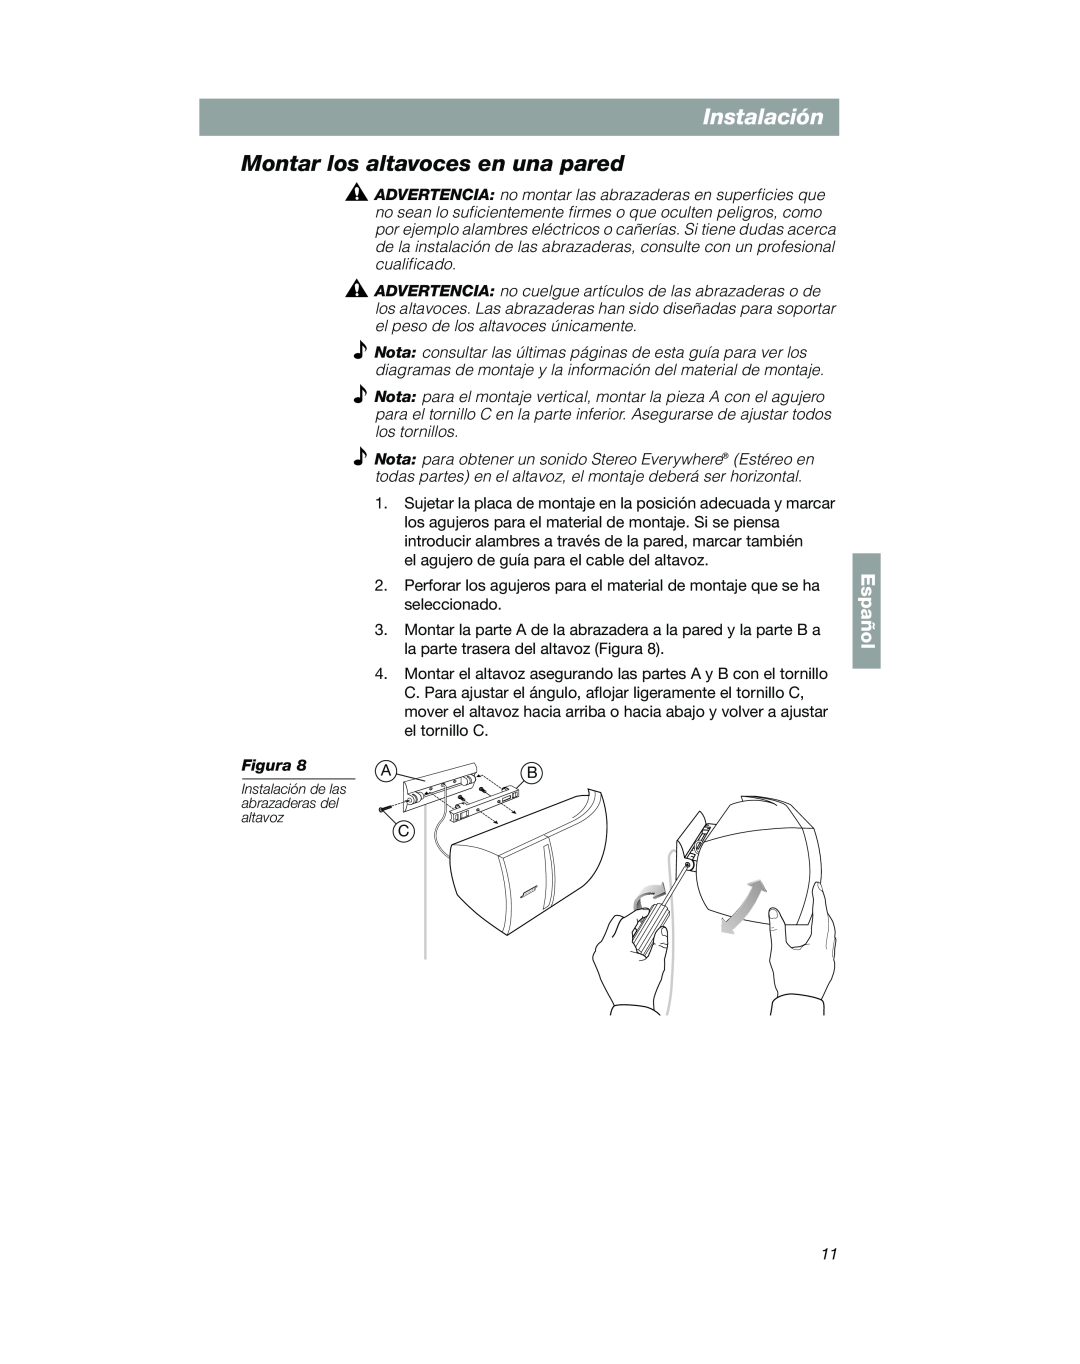 Bose VCS-10 manual Montar los altavoces en una pared, Español, Instalación de las abrazaderas del altavoz 